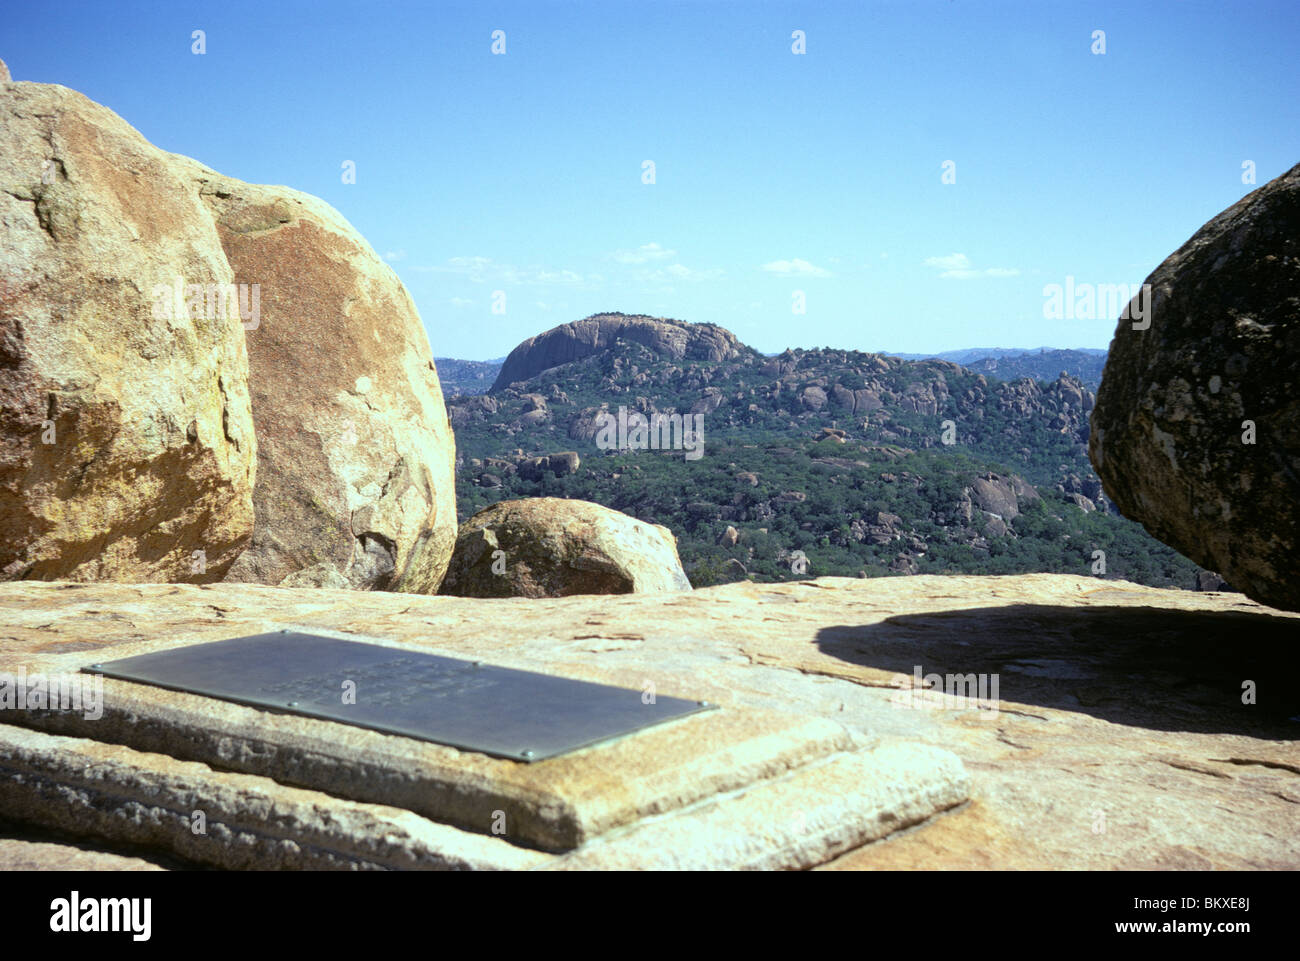 La tombe de Cecil Rhodes à la vue du monde, au milieu des paysages de granit du Matopos Hills, au Zimbabwe Banque D'Images